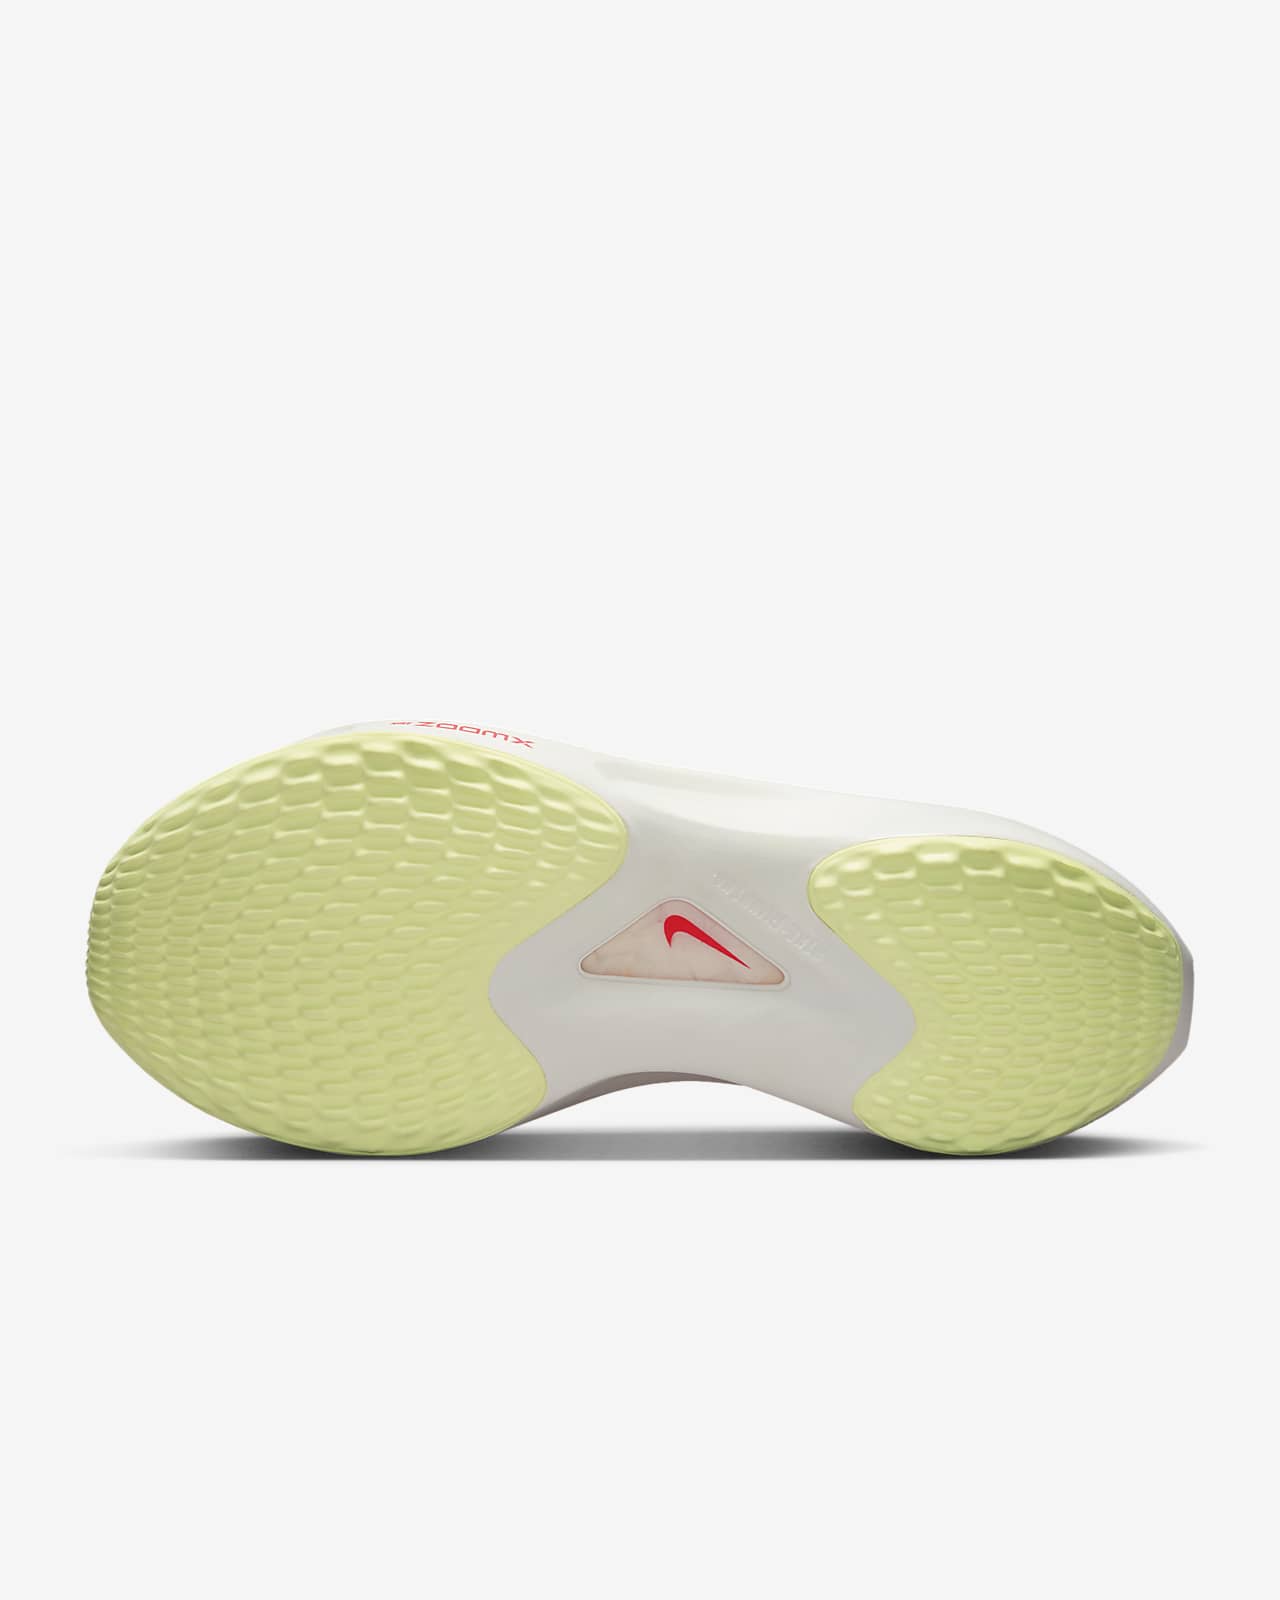 personalidad Agotamiento mermelada Nike Zoom Fly 5 Zapatillas de running para carretera - Mujer. Nike ES